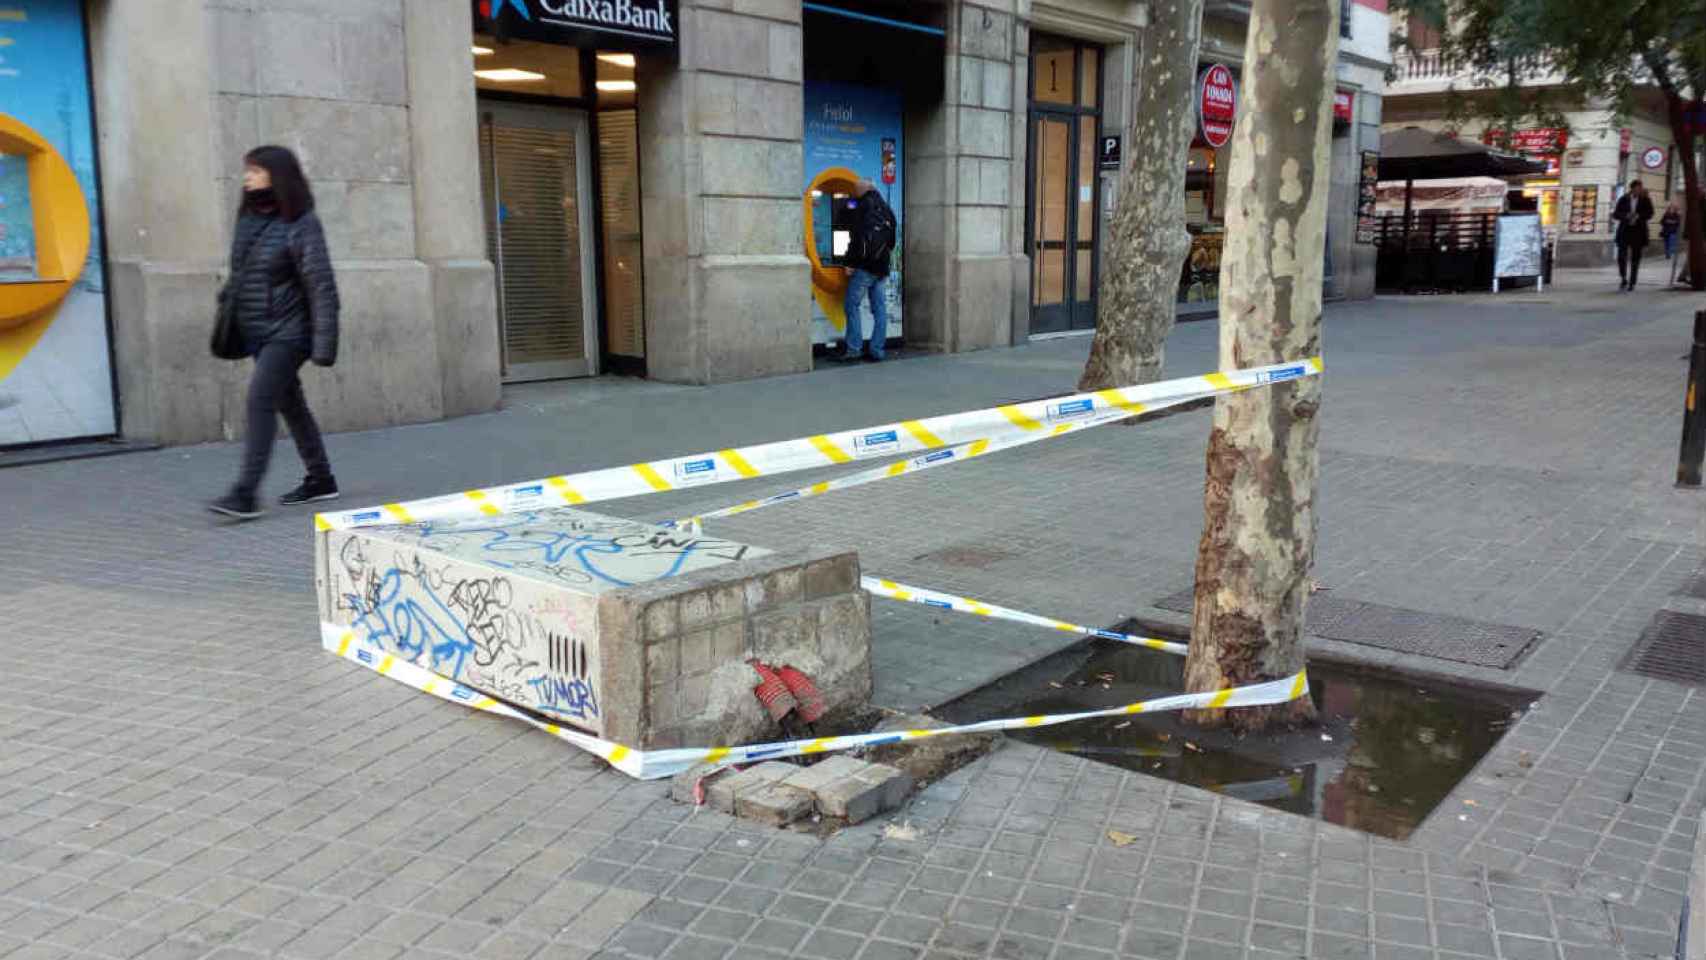 Mobiliario urbano caído y atado a un árbol en Barcelona  / ARCHIVO - METRÓPOLI - HF